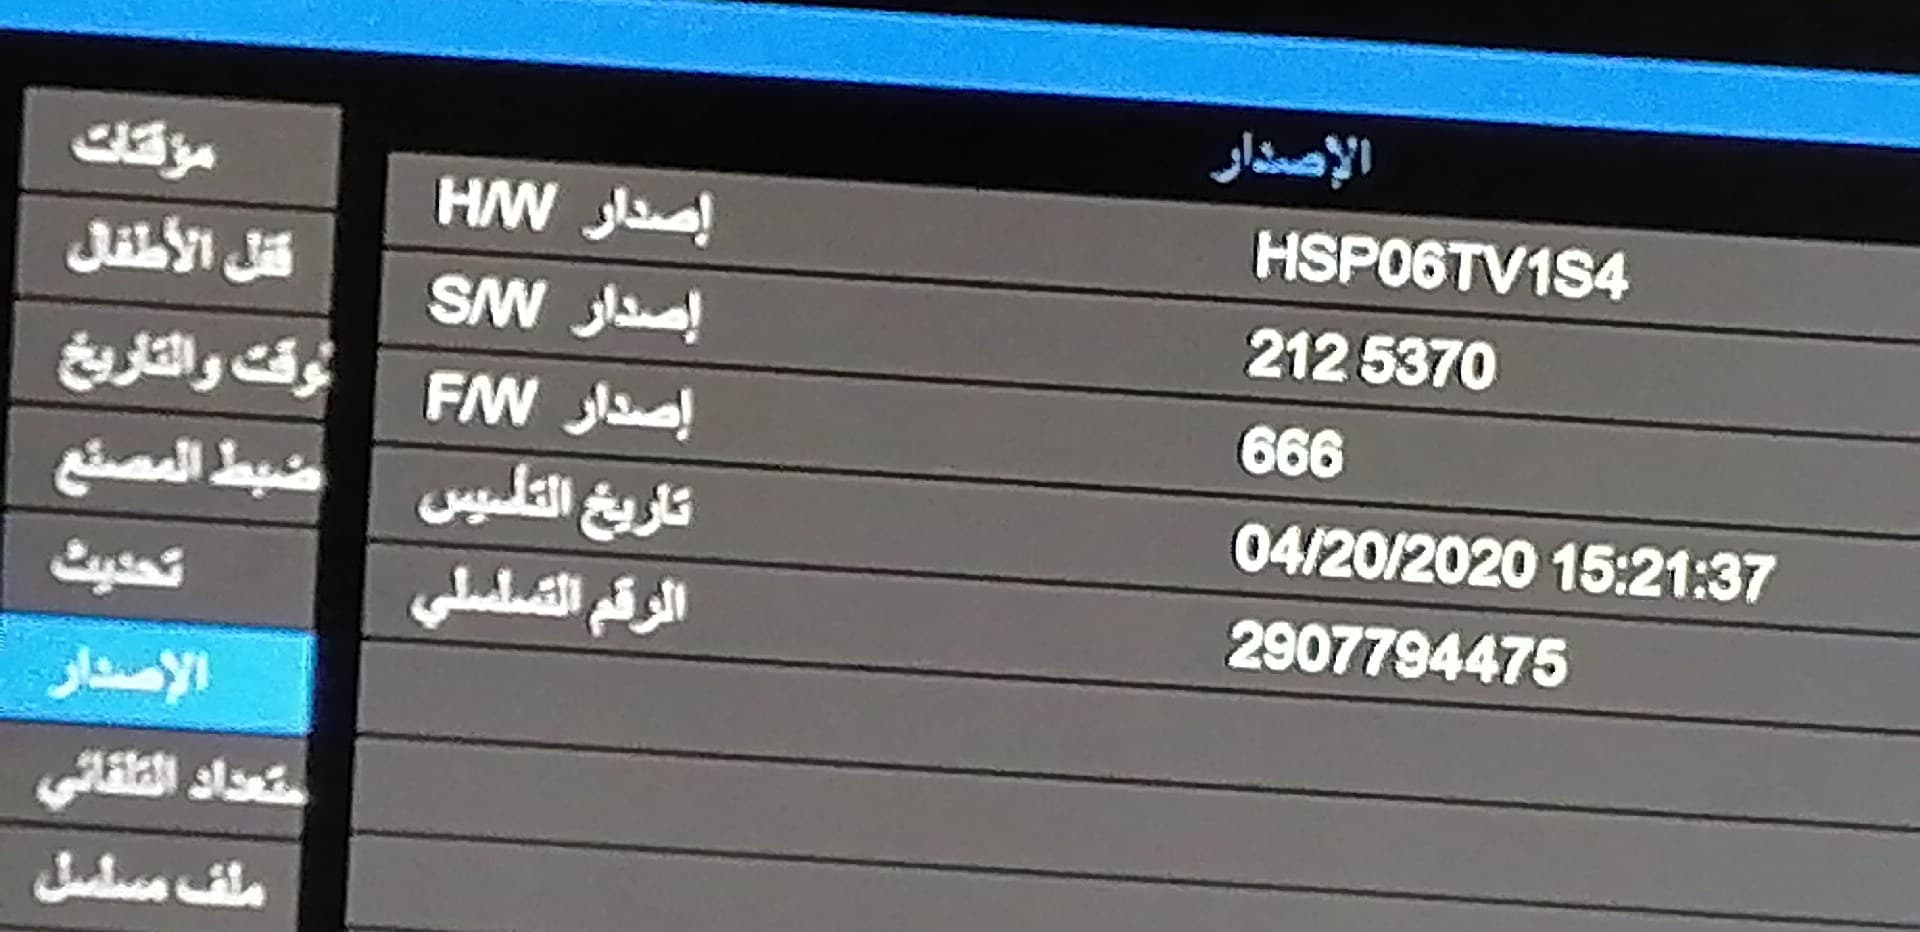 احدث ملف قنوات عربي صن بلص فانيلا معالج HSP06TV تاريخ اليوم 17-3-2022 P_1669jnnsx2